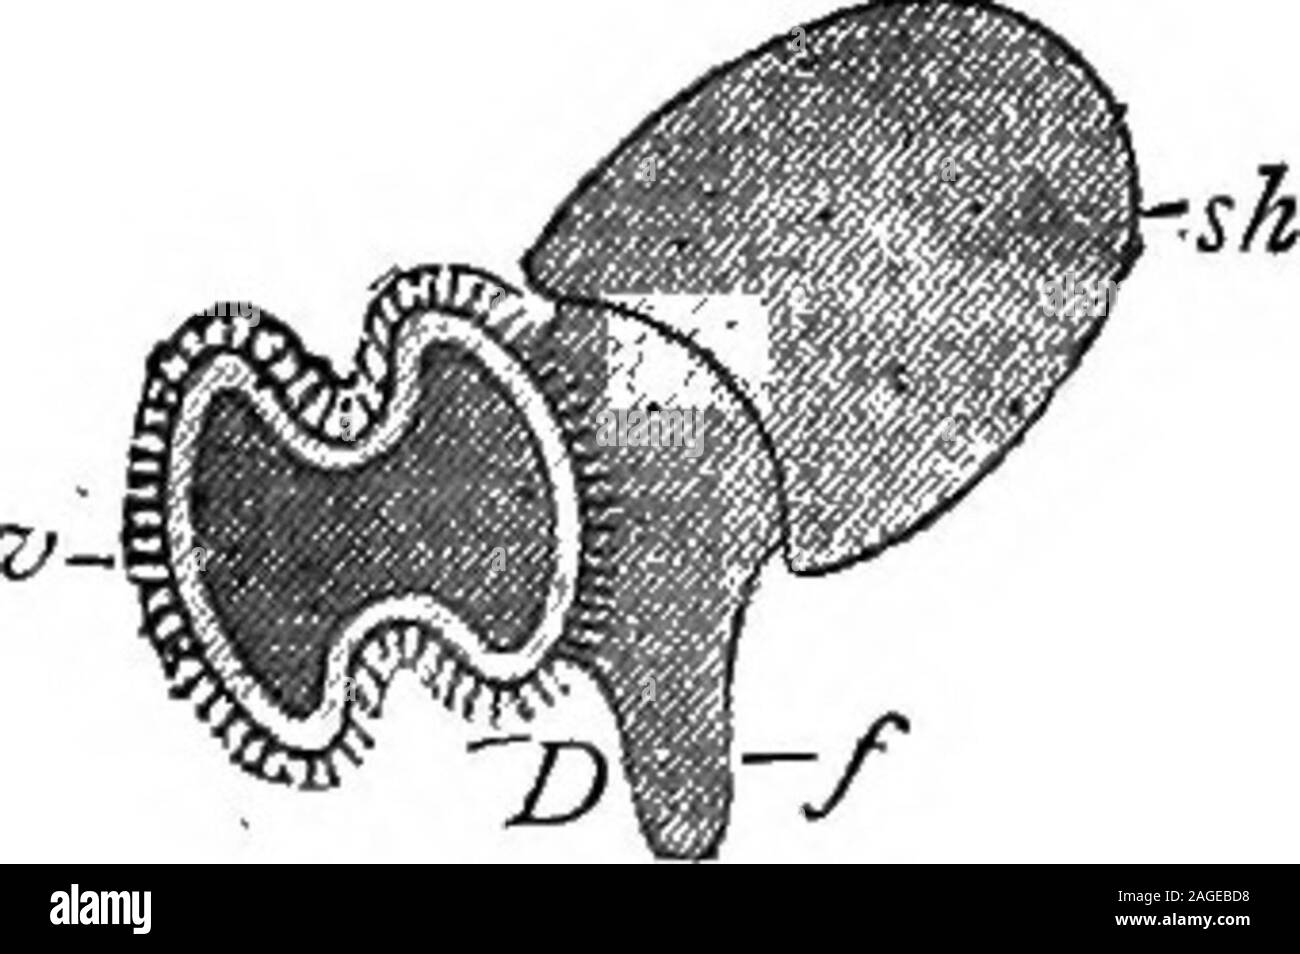 . Contorni di zoologia. Fig. 205. Ideale di mollusco.-dopo-Ray Lankester. "K., bocca ; s^.c, cerebrale nei gangli; c, i bordi del mantello mantello; s.g-.yduct del lobo destro della ghiandola digestiva ; s., cavità pericardica ;y!,bordi di shell-sac ; v., ventricolo del cuore; "., nephridium ; a7t.,l'ano ; "., parte posteriore del piede; /,, apertura di nephridium ;^., apertura genitale; g.ab, ganglio addominale su visceralloop " jT-z*-) ganglio viscerale ; a./.., il lobo sinistro della ghiandola digestiva ;;*., piede; g.pe., ganglio pedale; ff.pl. ganglio pleurica. loop collegando il cerebrals sotto il gzcllet e providedwith due- buc Foto Stock